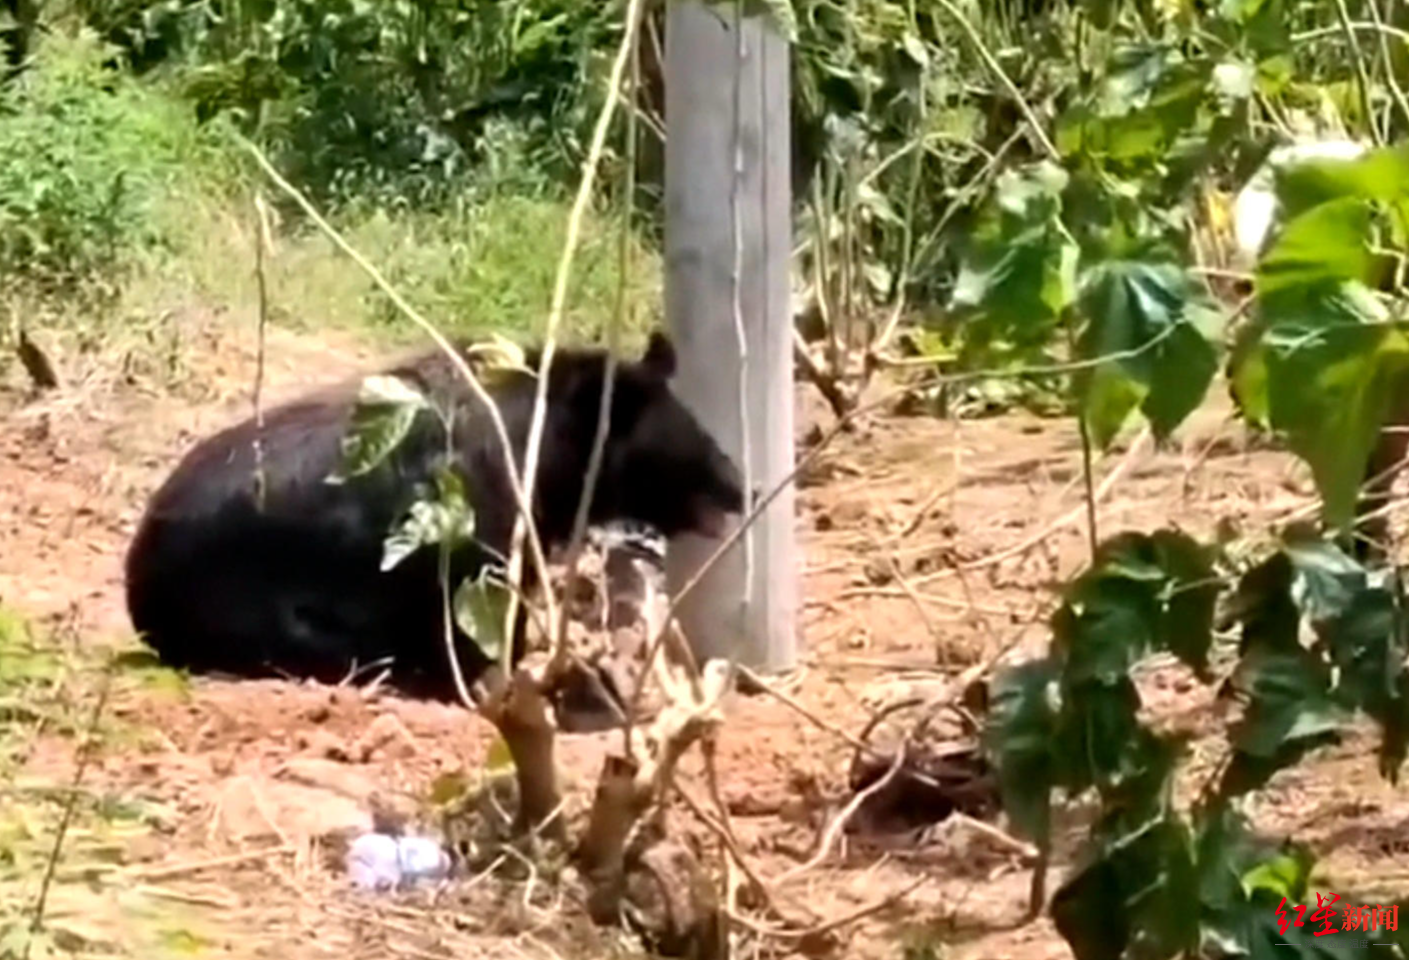 ↑7月11日，乐至方广村，一只黑熊被捕获，来源不明